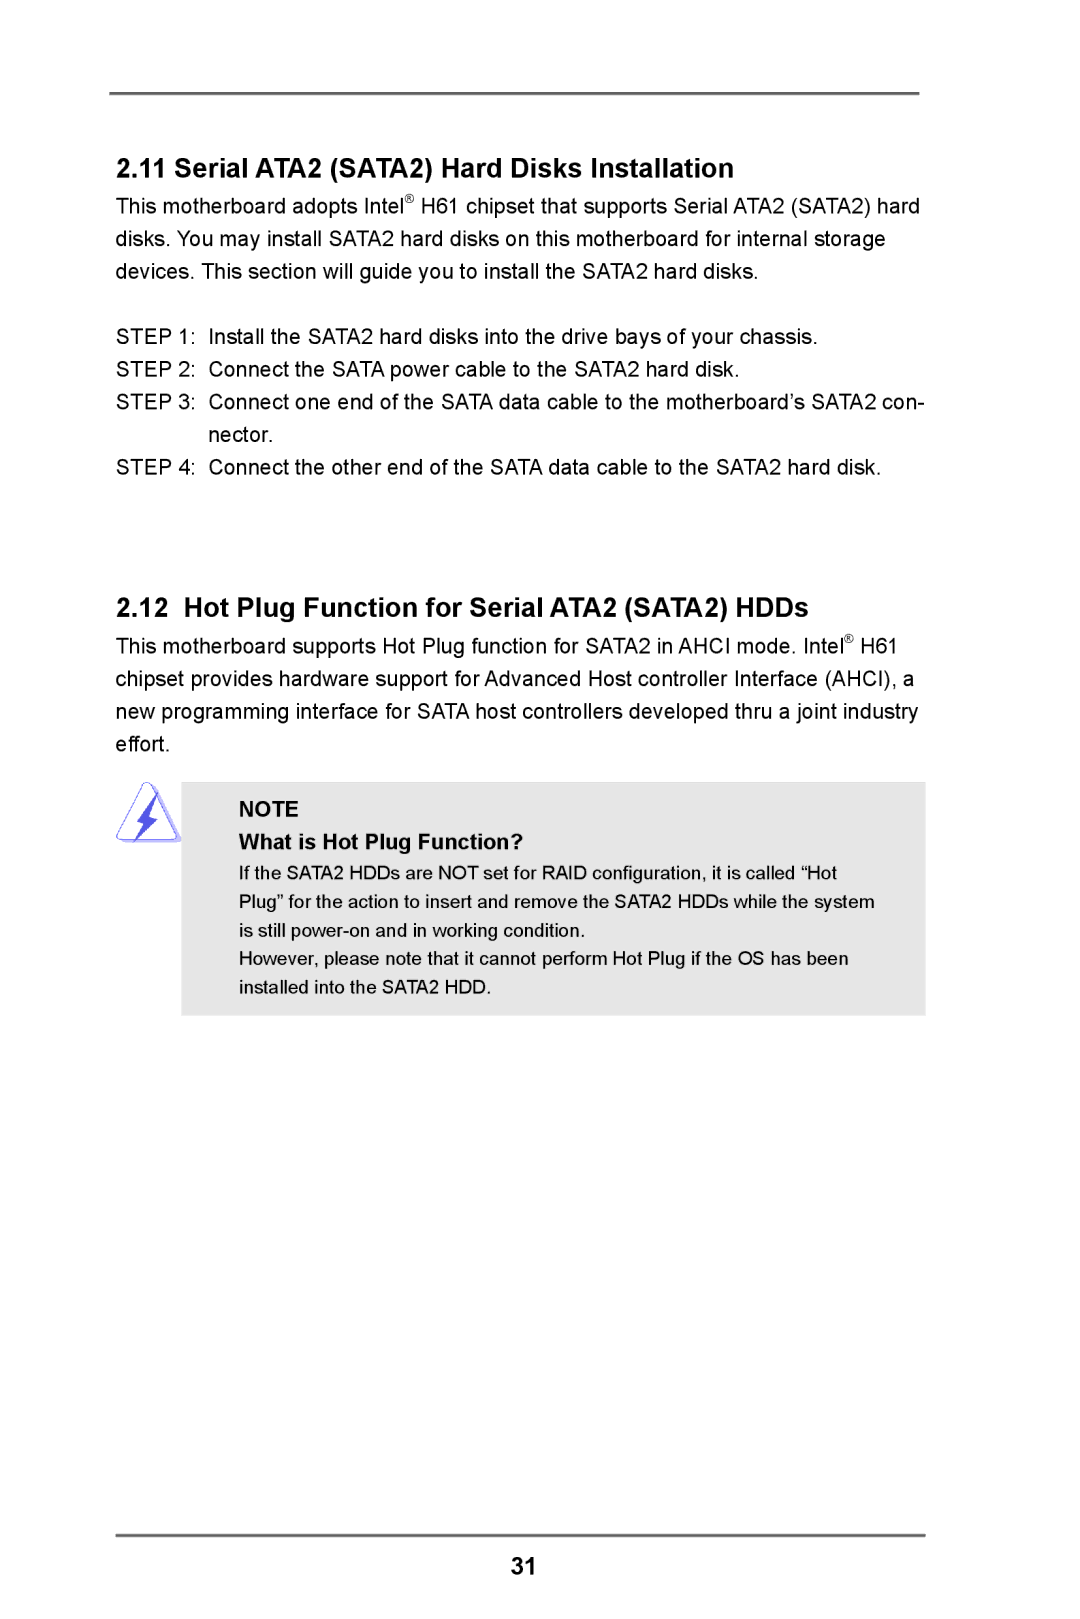 ASRock H61M-DP3 manual Serial ATA2 SATA2 Hard Disks Installation, Hot Plug Function for Serial ATA2 SATA2 HDDs 